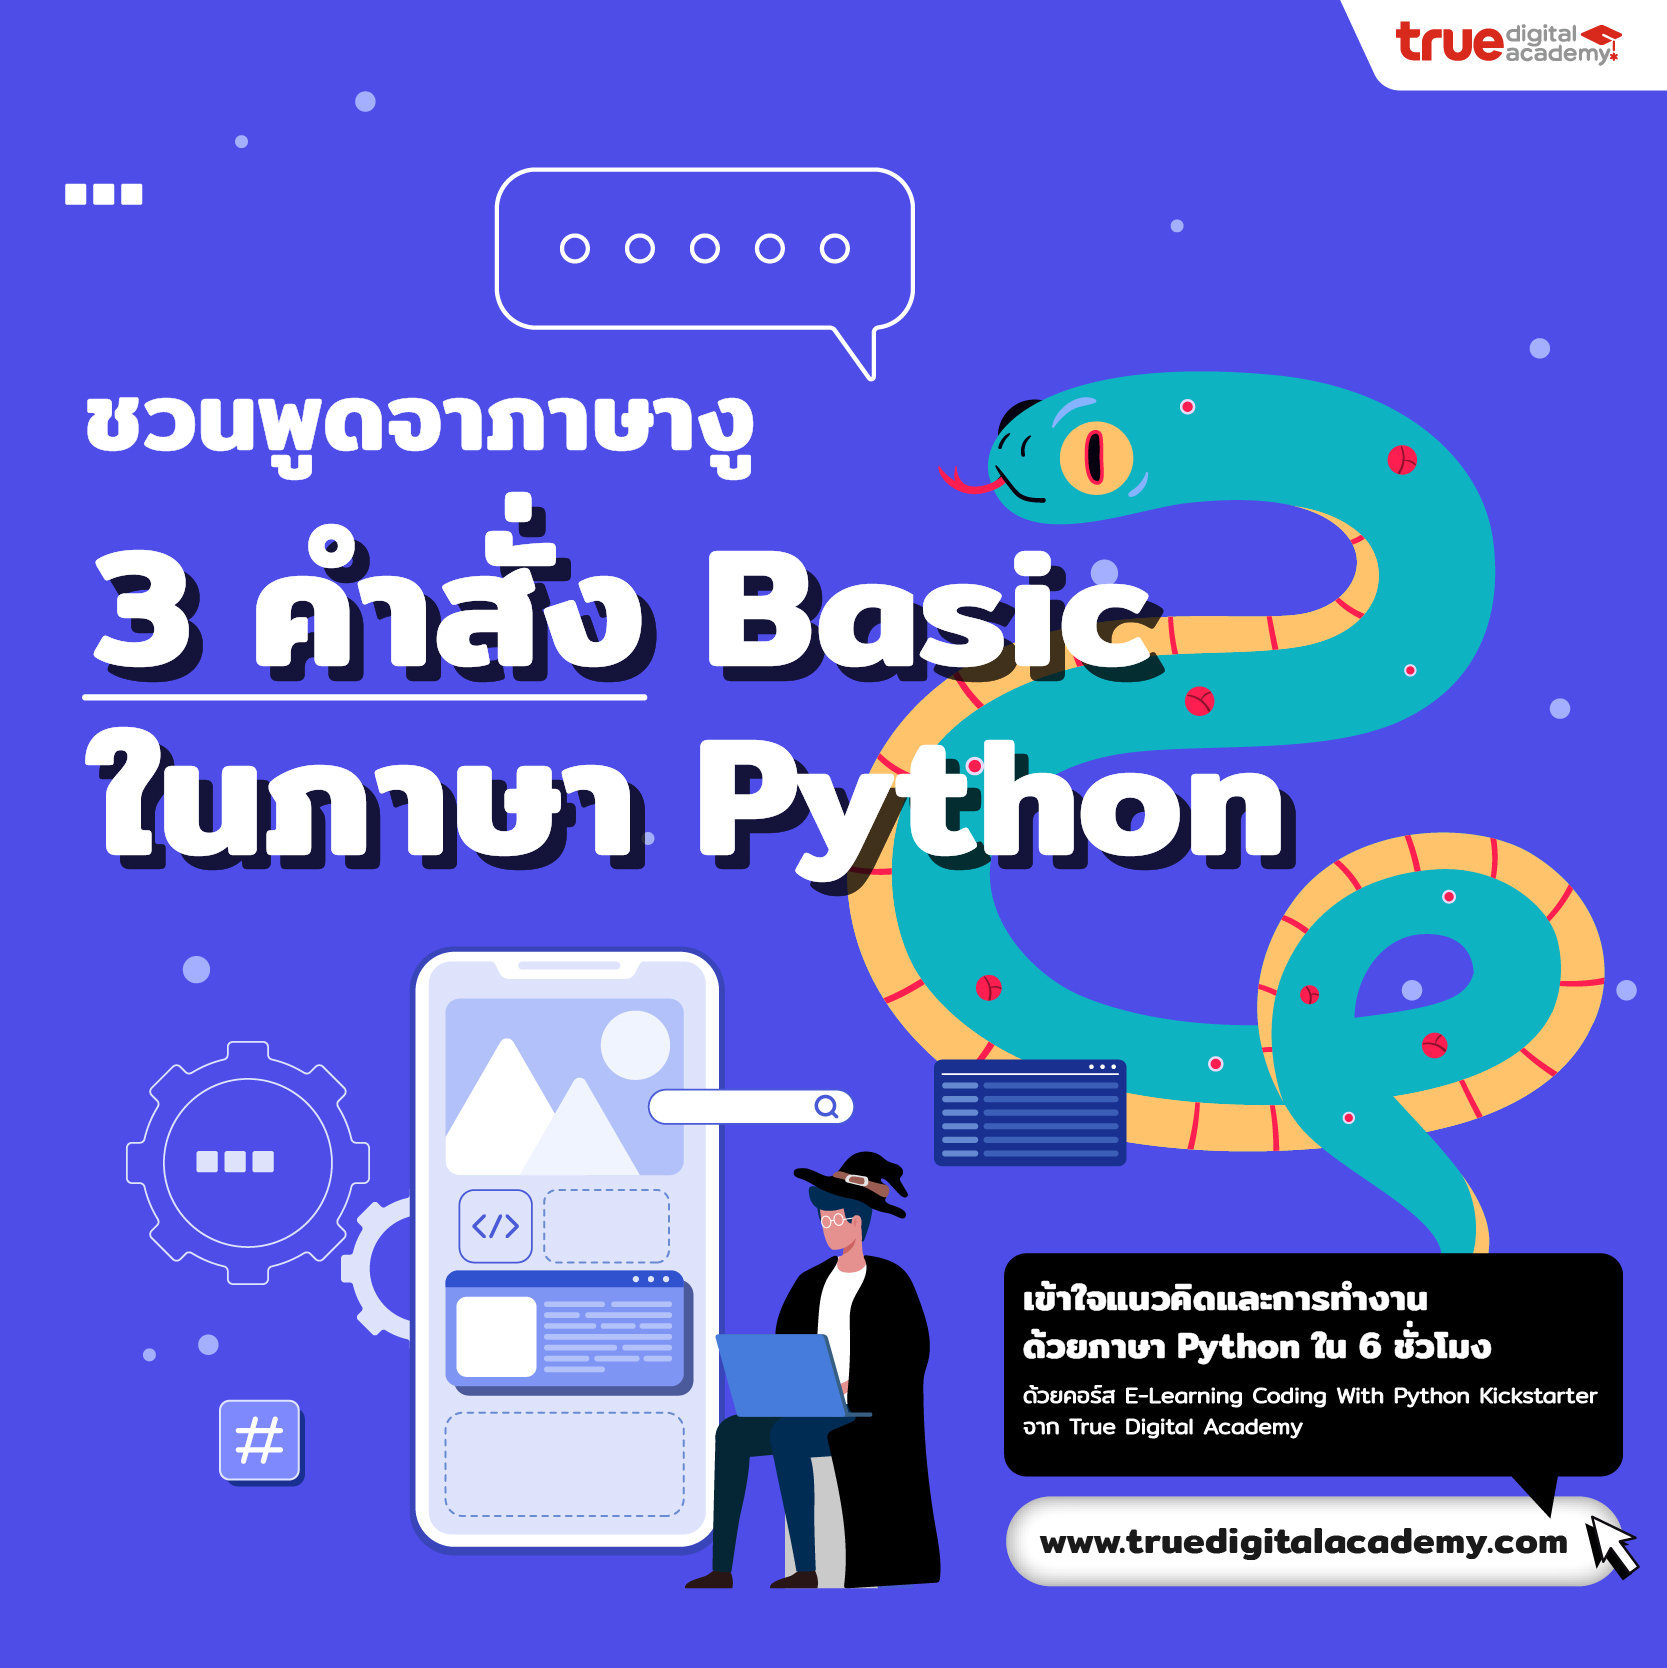 ชวนพูดจาภาษางู Ep.1 3 คำสั่ง Basic ในภาษา Python - True Digital Academy